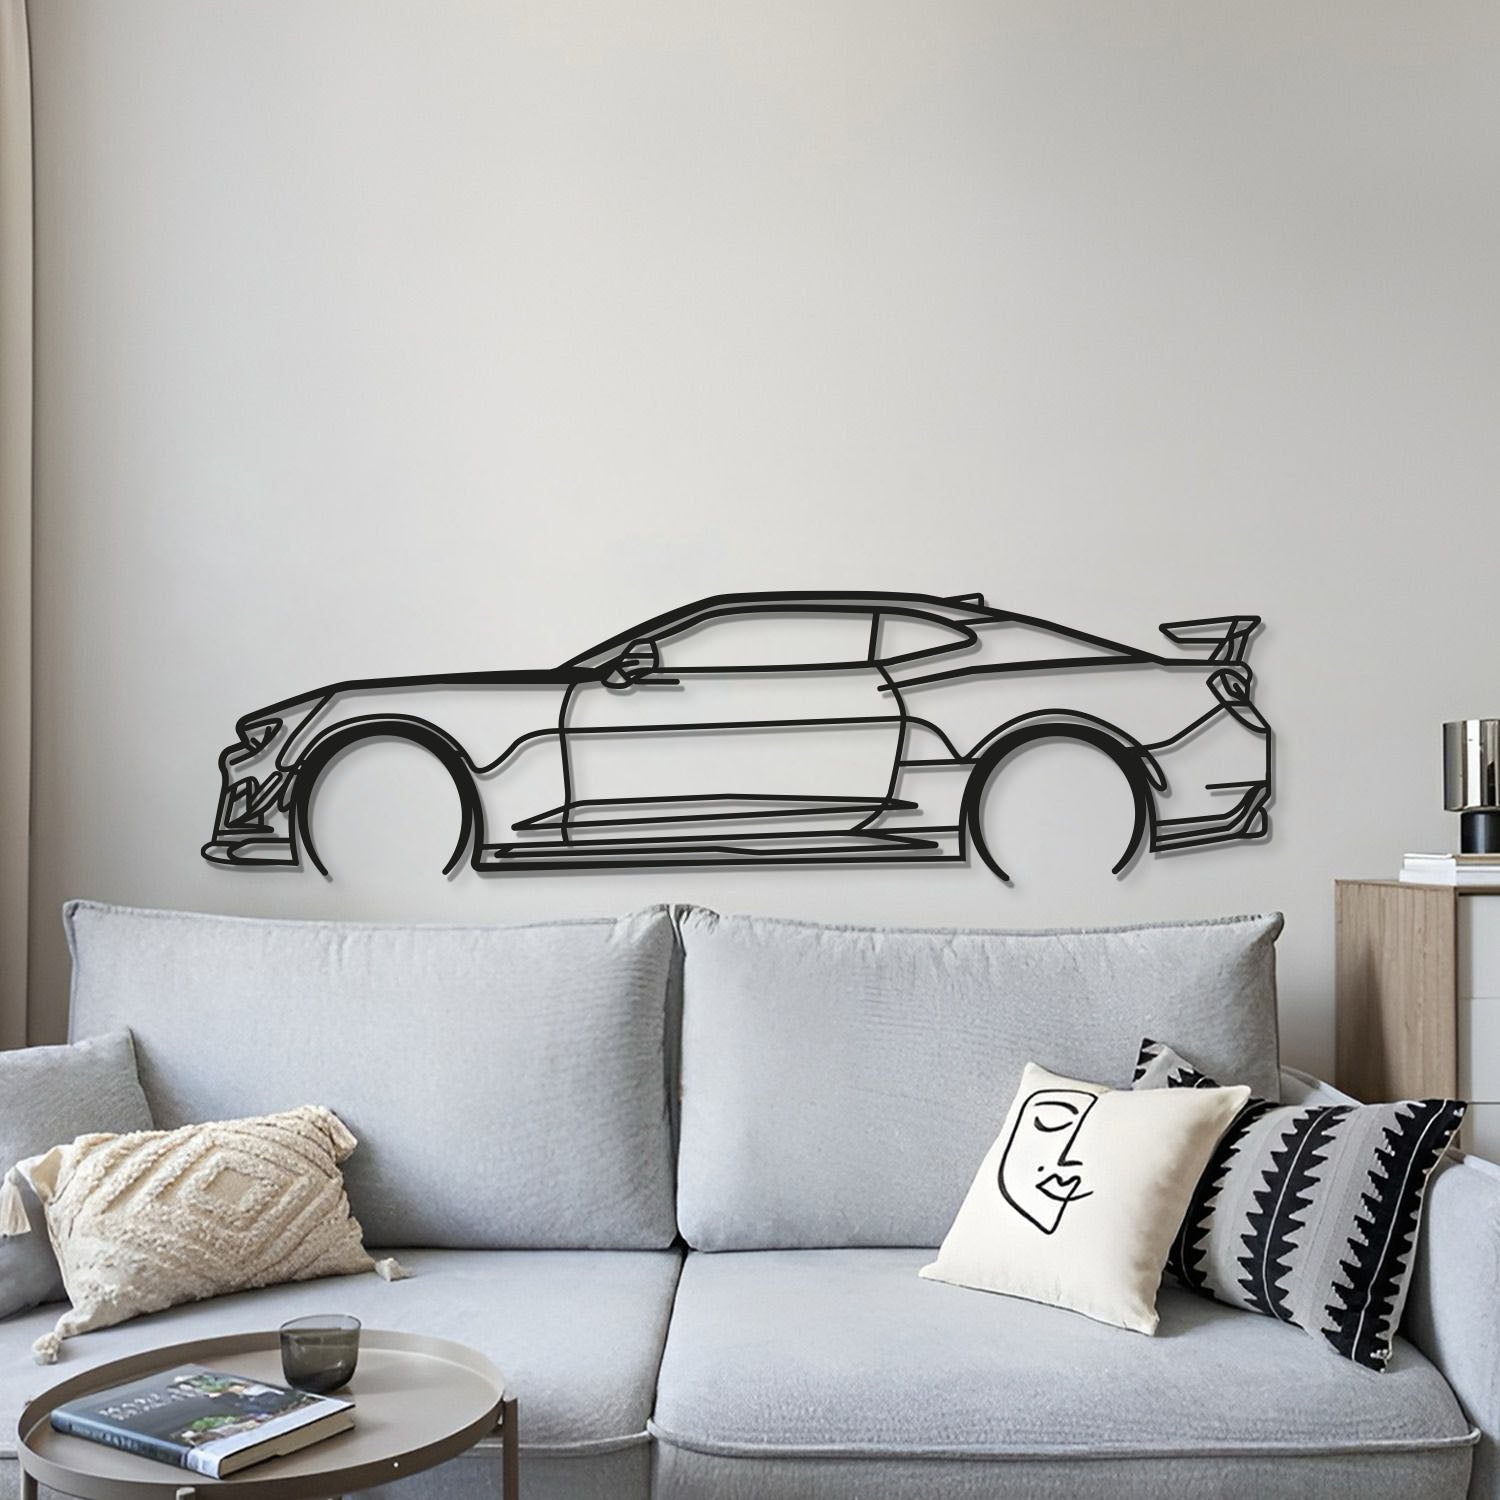 Camaro ZL1 Detailed Metal Car Wall Art - MT0893